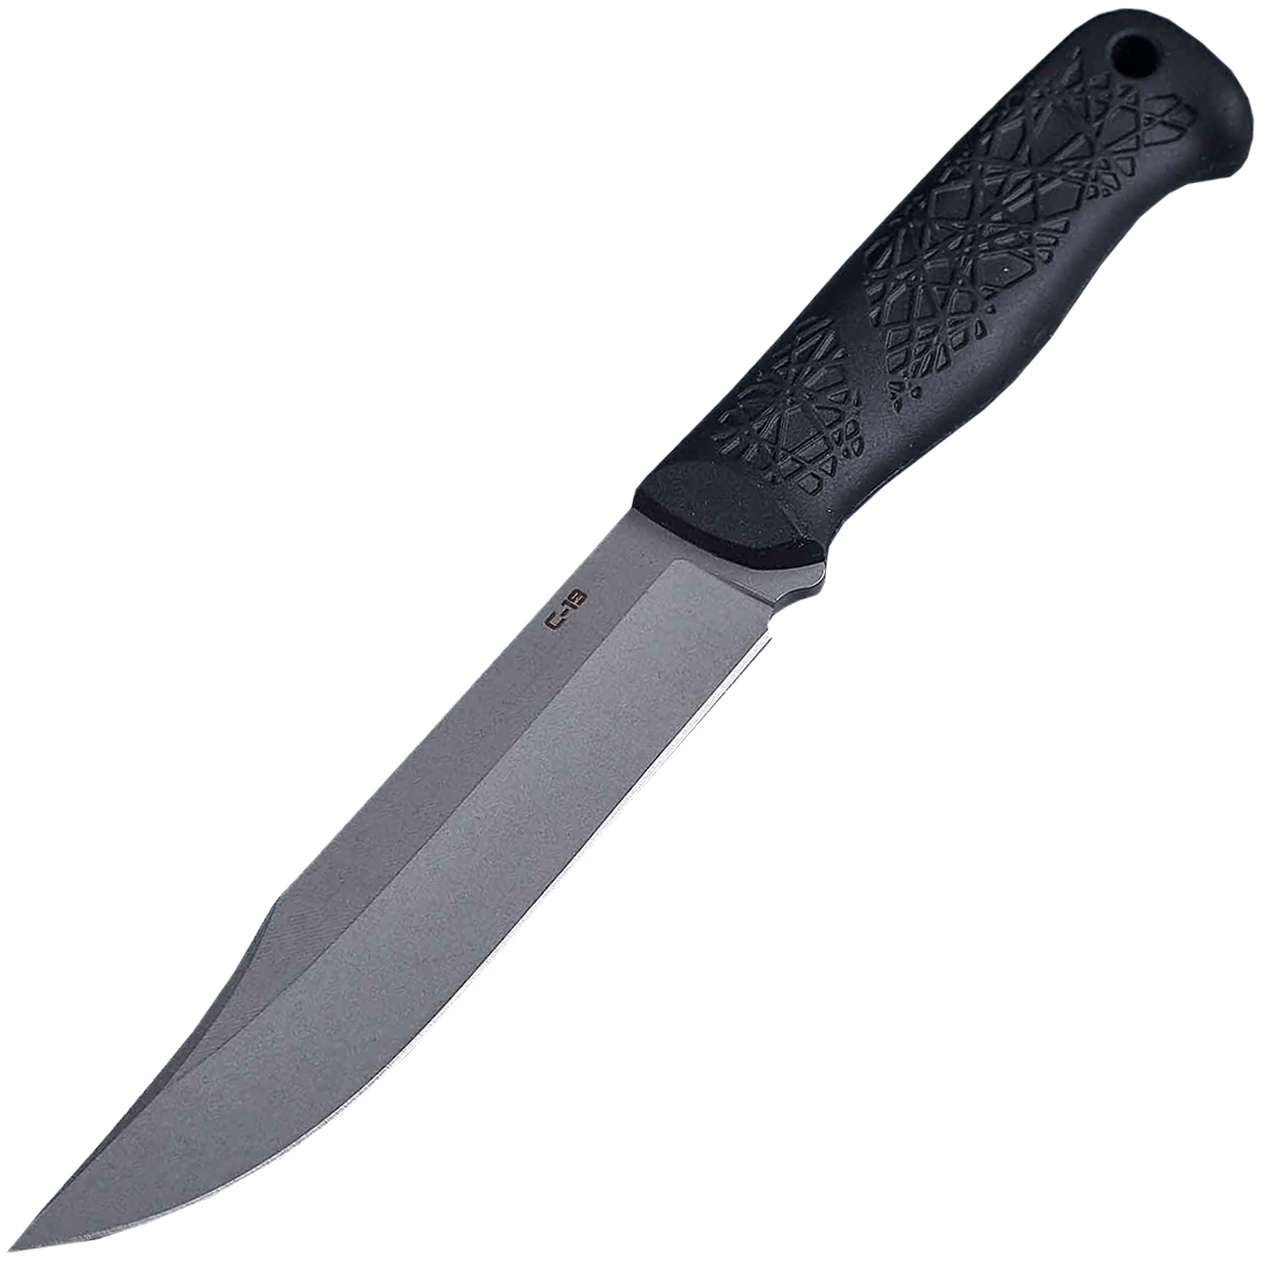 Нож C-19 Mr.Blade, сталь 95Х18, рукоять эластрон, Бренды, Mr.Blade